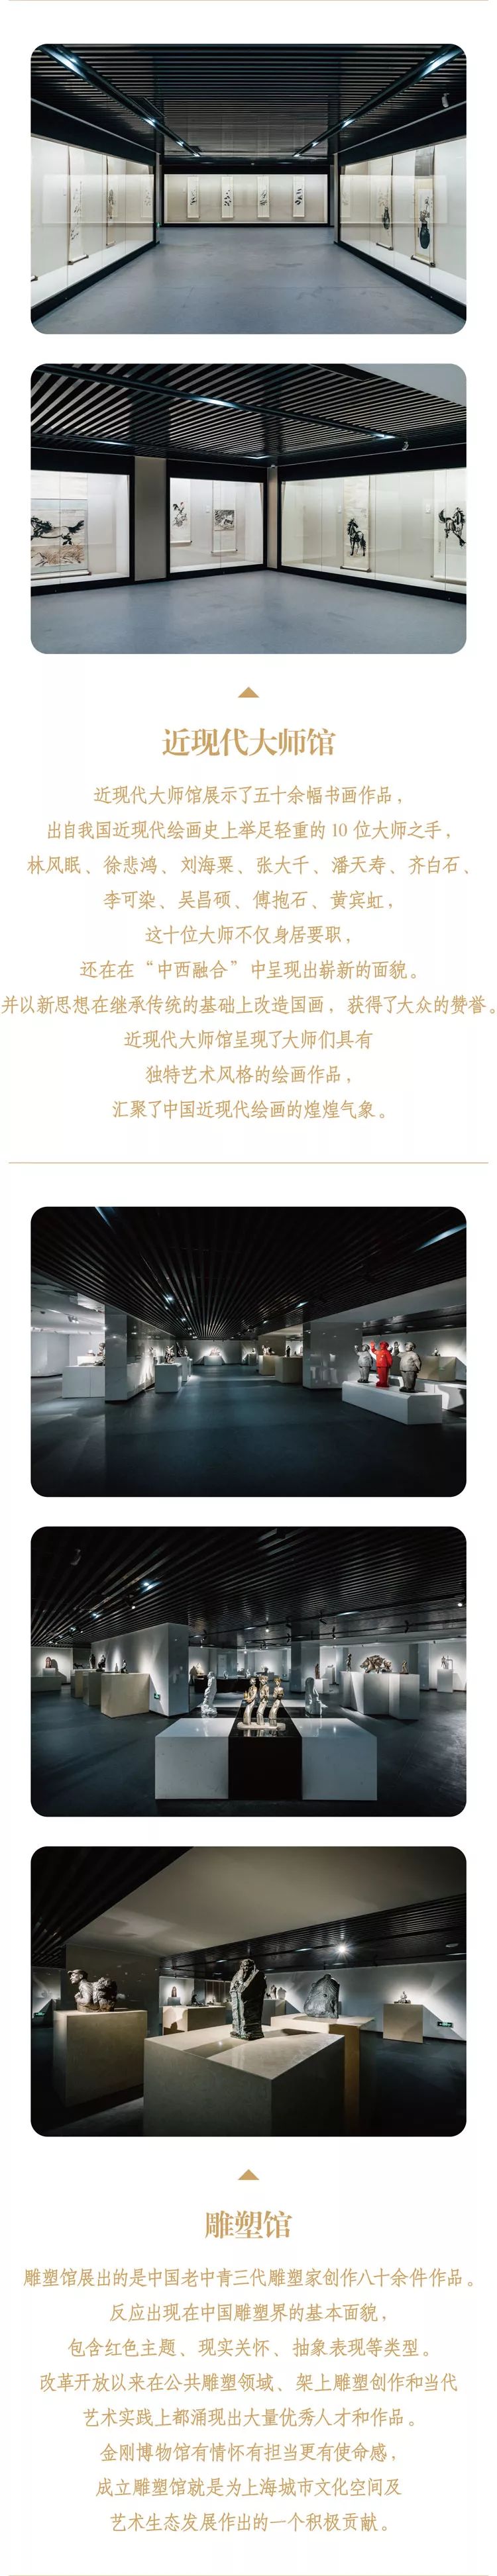 上海金刚博物馆开放时间+门票+地址交通